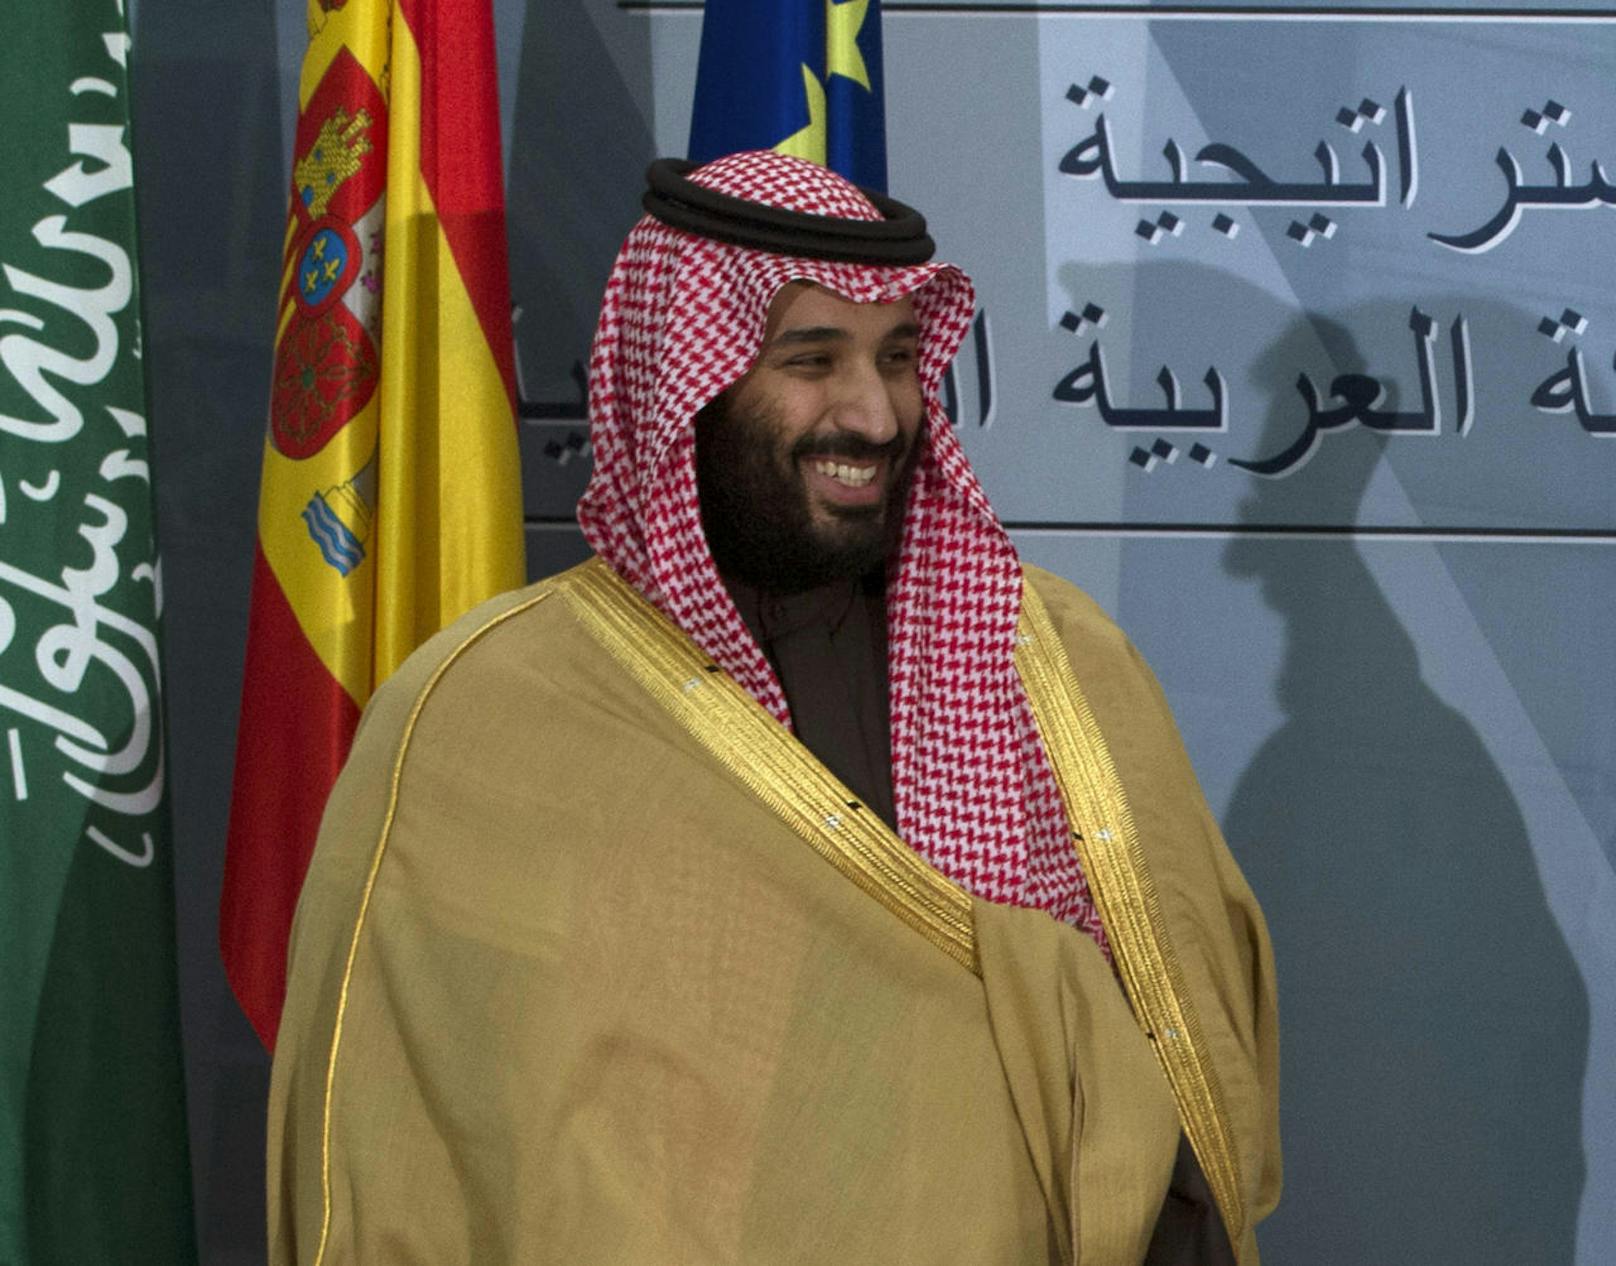 Der saudische Kronprinz Mohammed bin Salman soll das Kunstwerk über einen Mittelsmann ersteigert haben. Nun soll es sich auf seiner Luxusjacht befinden.